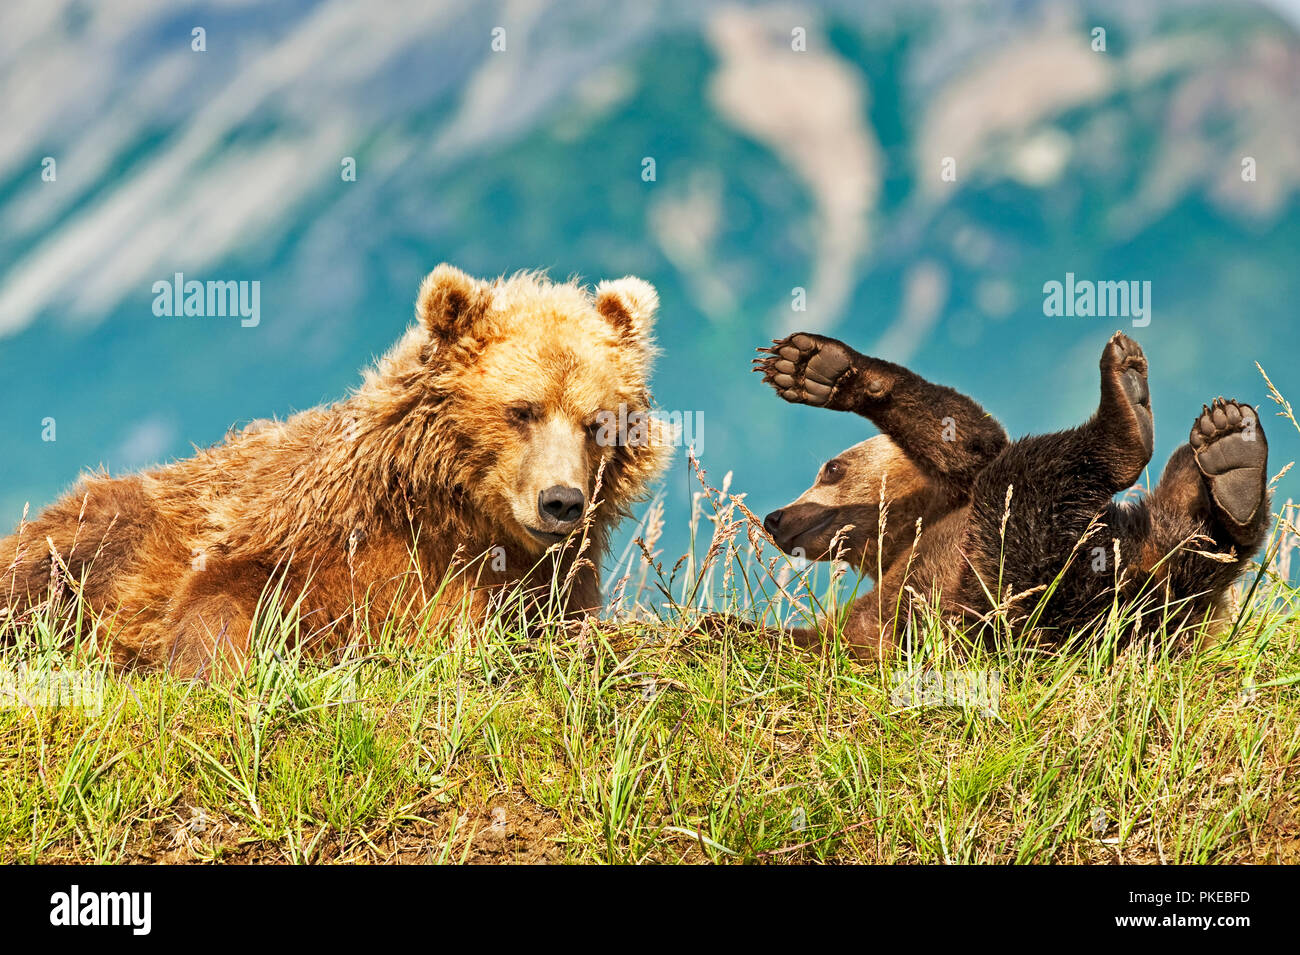 Kodiak Bear (Ursus arctos middendorffi) Säen und verspielten Cub in Gras an einem Berghang, Katmai National Park, Alaska, Vereinigte Staaten von Amerika Stockfoto